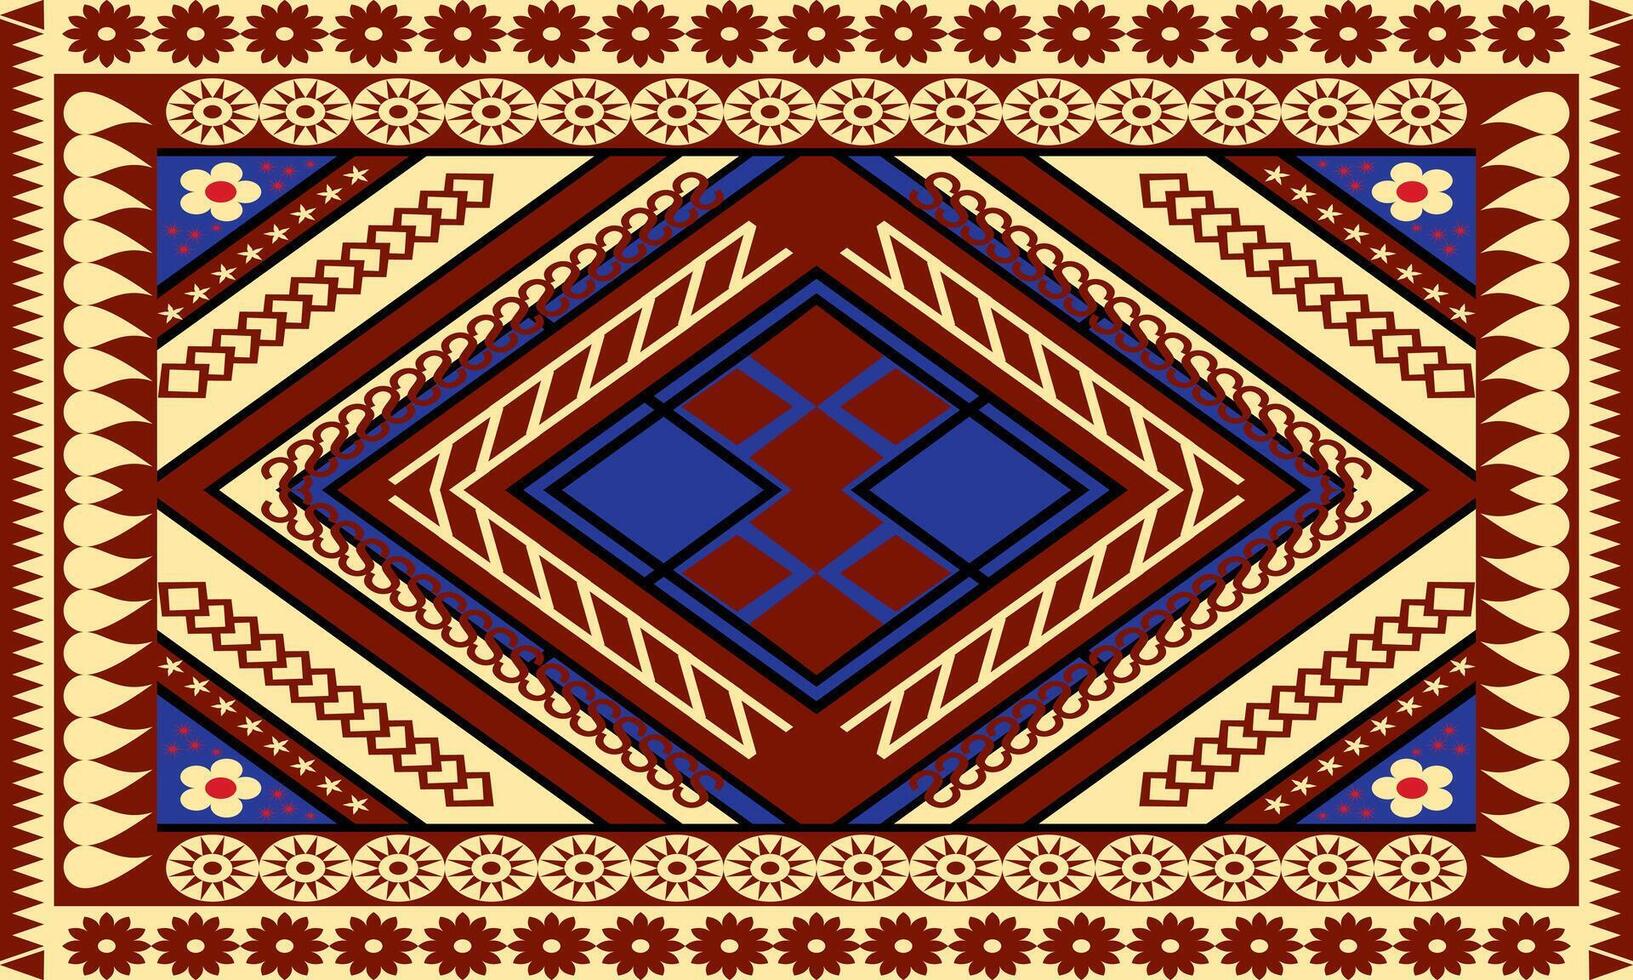 geométrico formas tela diseño vector mezcla y partido tailandés patrones. sin costura, alfombrado pisos, cinta, chales, toallas, textiles, yoga esteras, cuello bufandas o estampado pañuelos